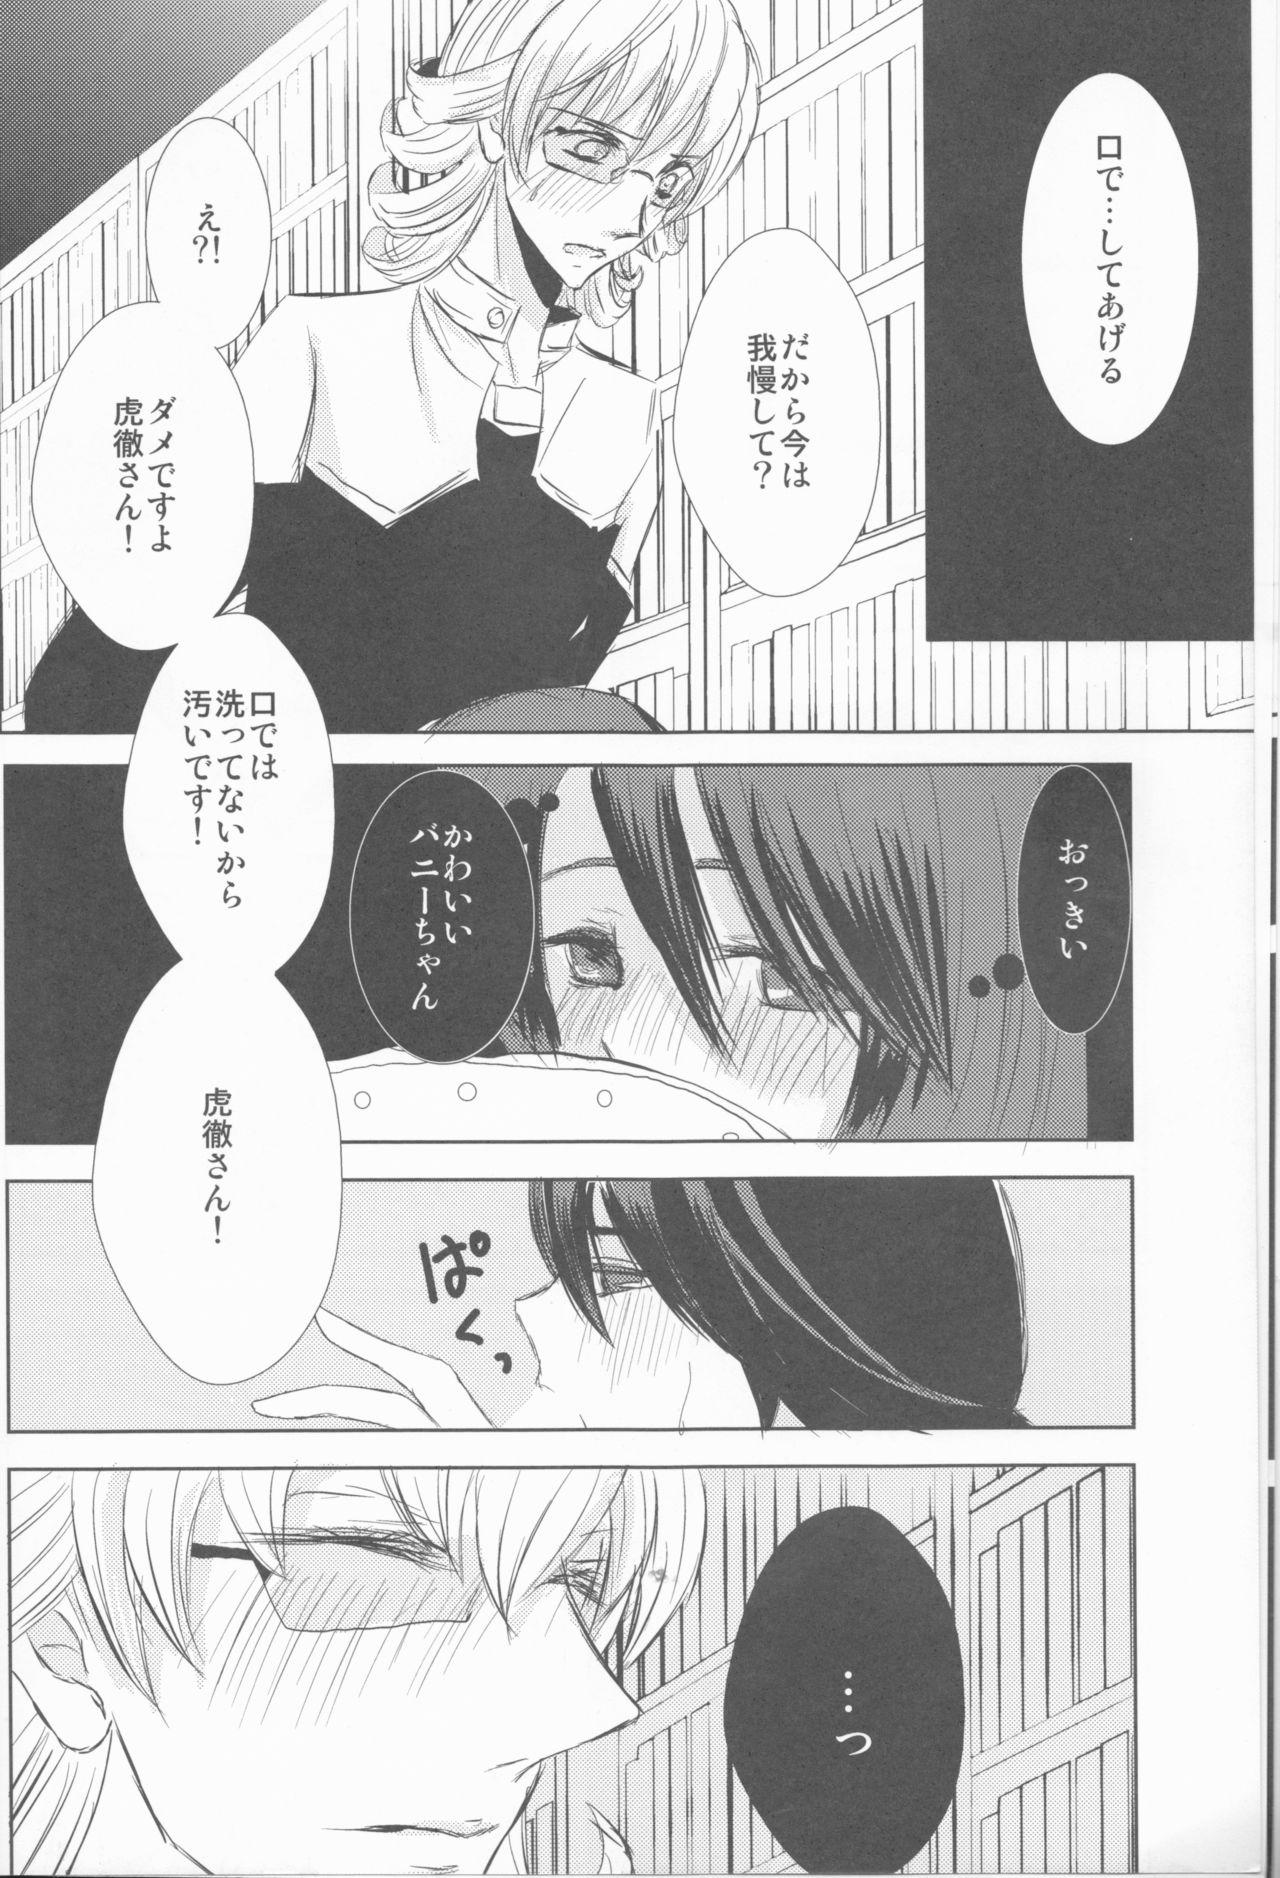 Naija Itsuka wa inaku naru kimi e - Tiger and bunny Creamy - Page 9